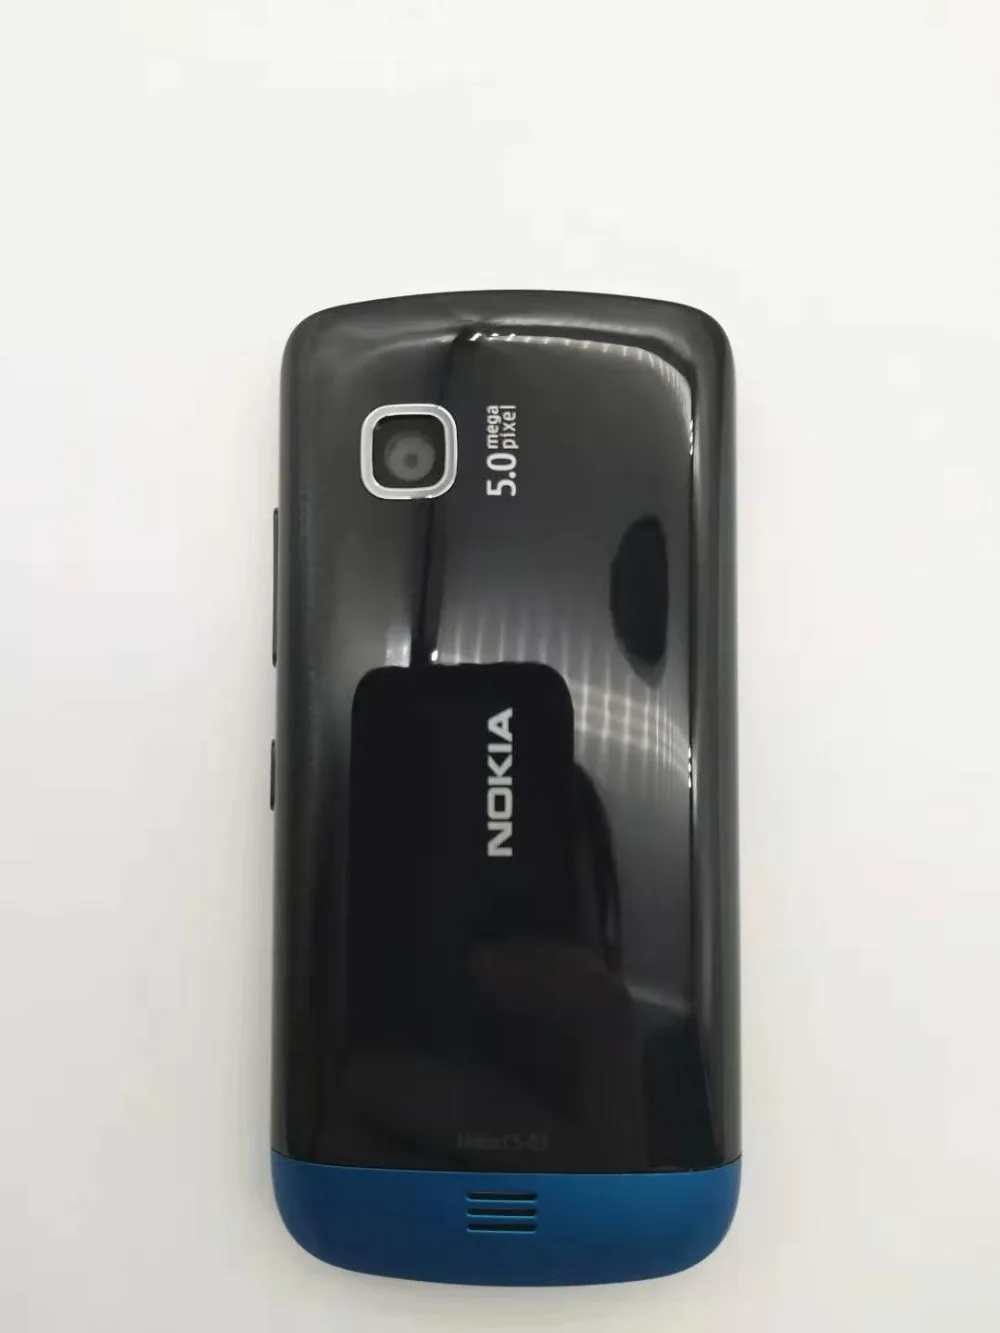 C5-03 Nokia C5-03 wifi gps 5MP 3g Bluetooth разблокированный мобильный телефон один год гарантии